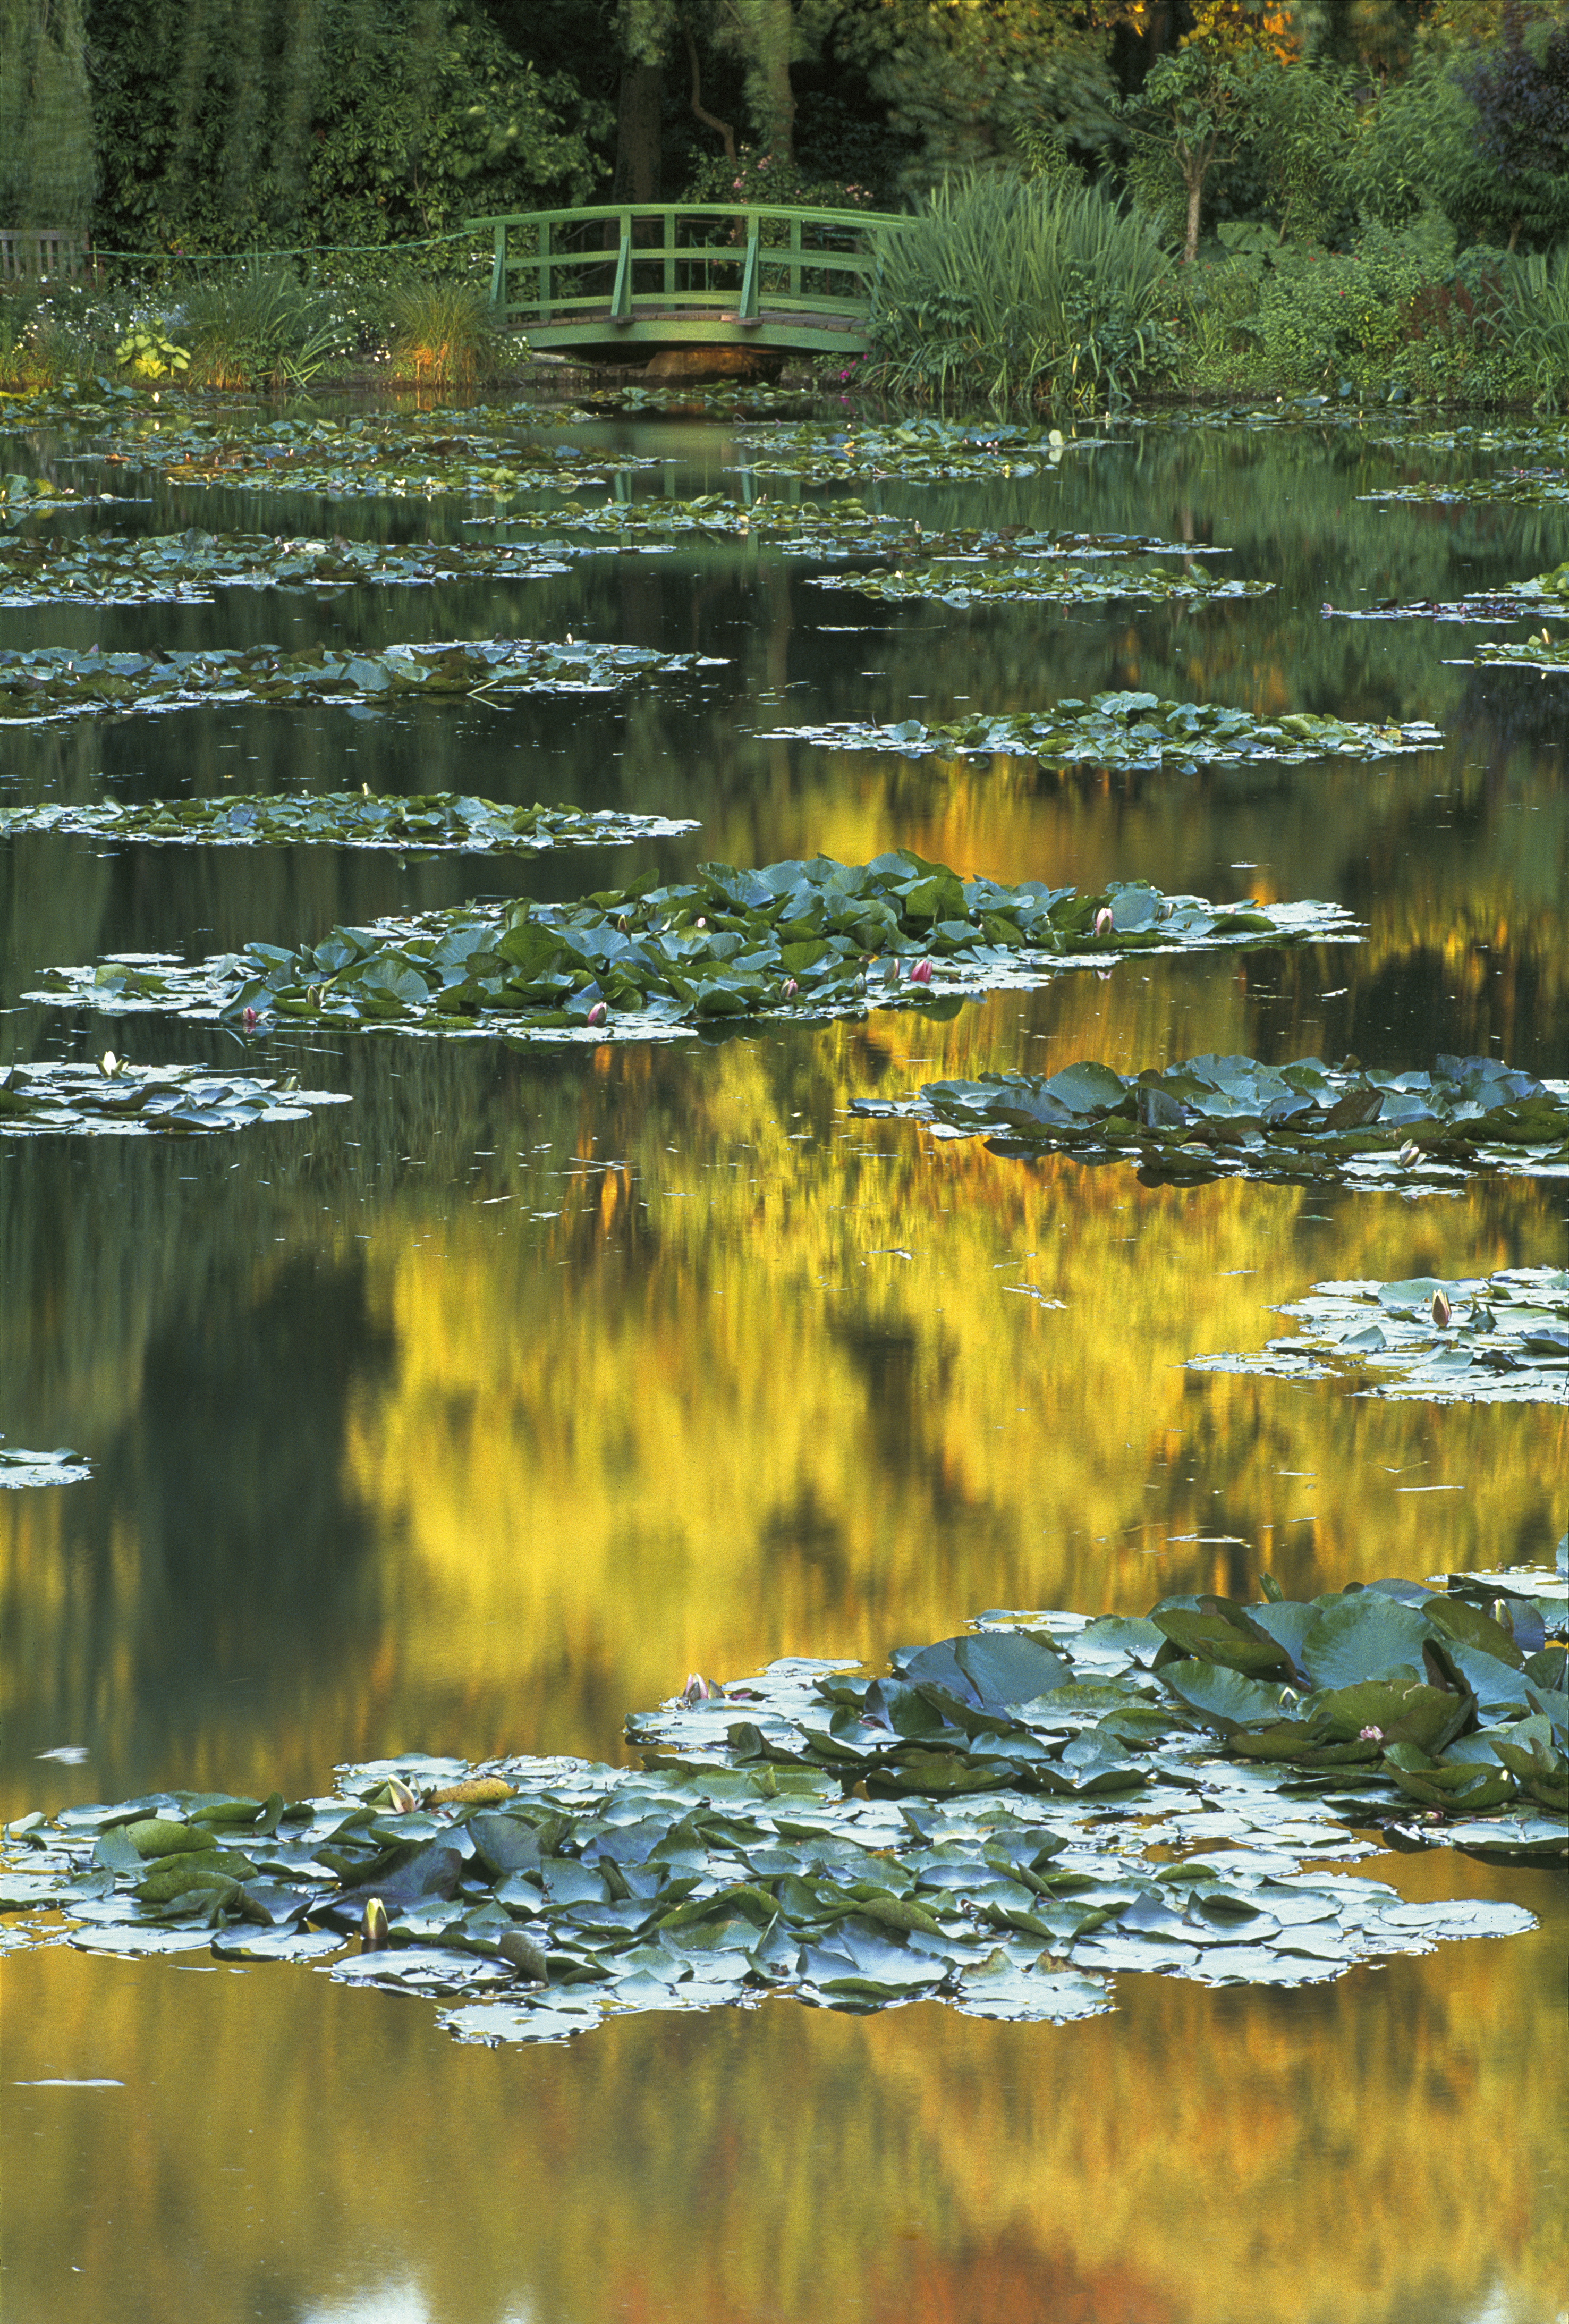 Jardins de Claude Monet, le jardin d’eau